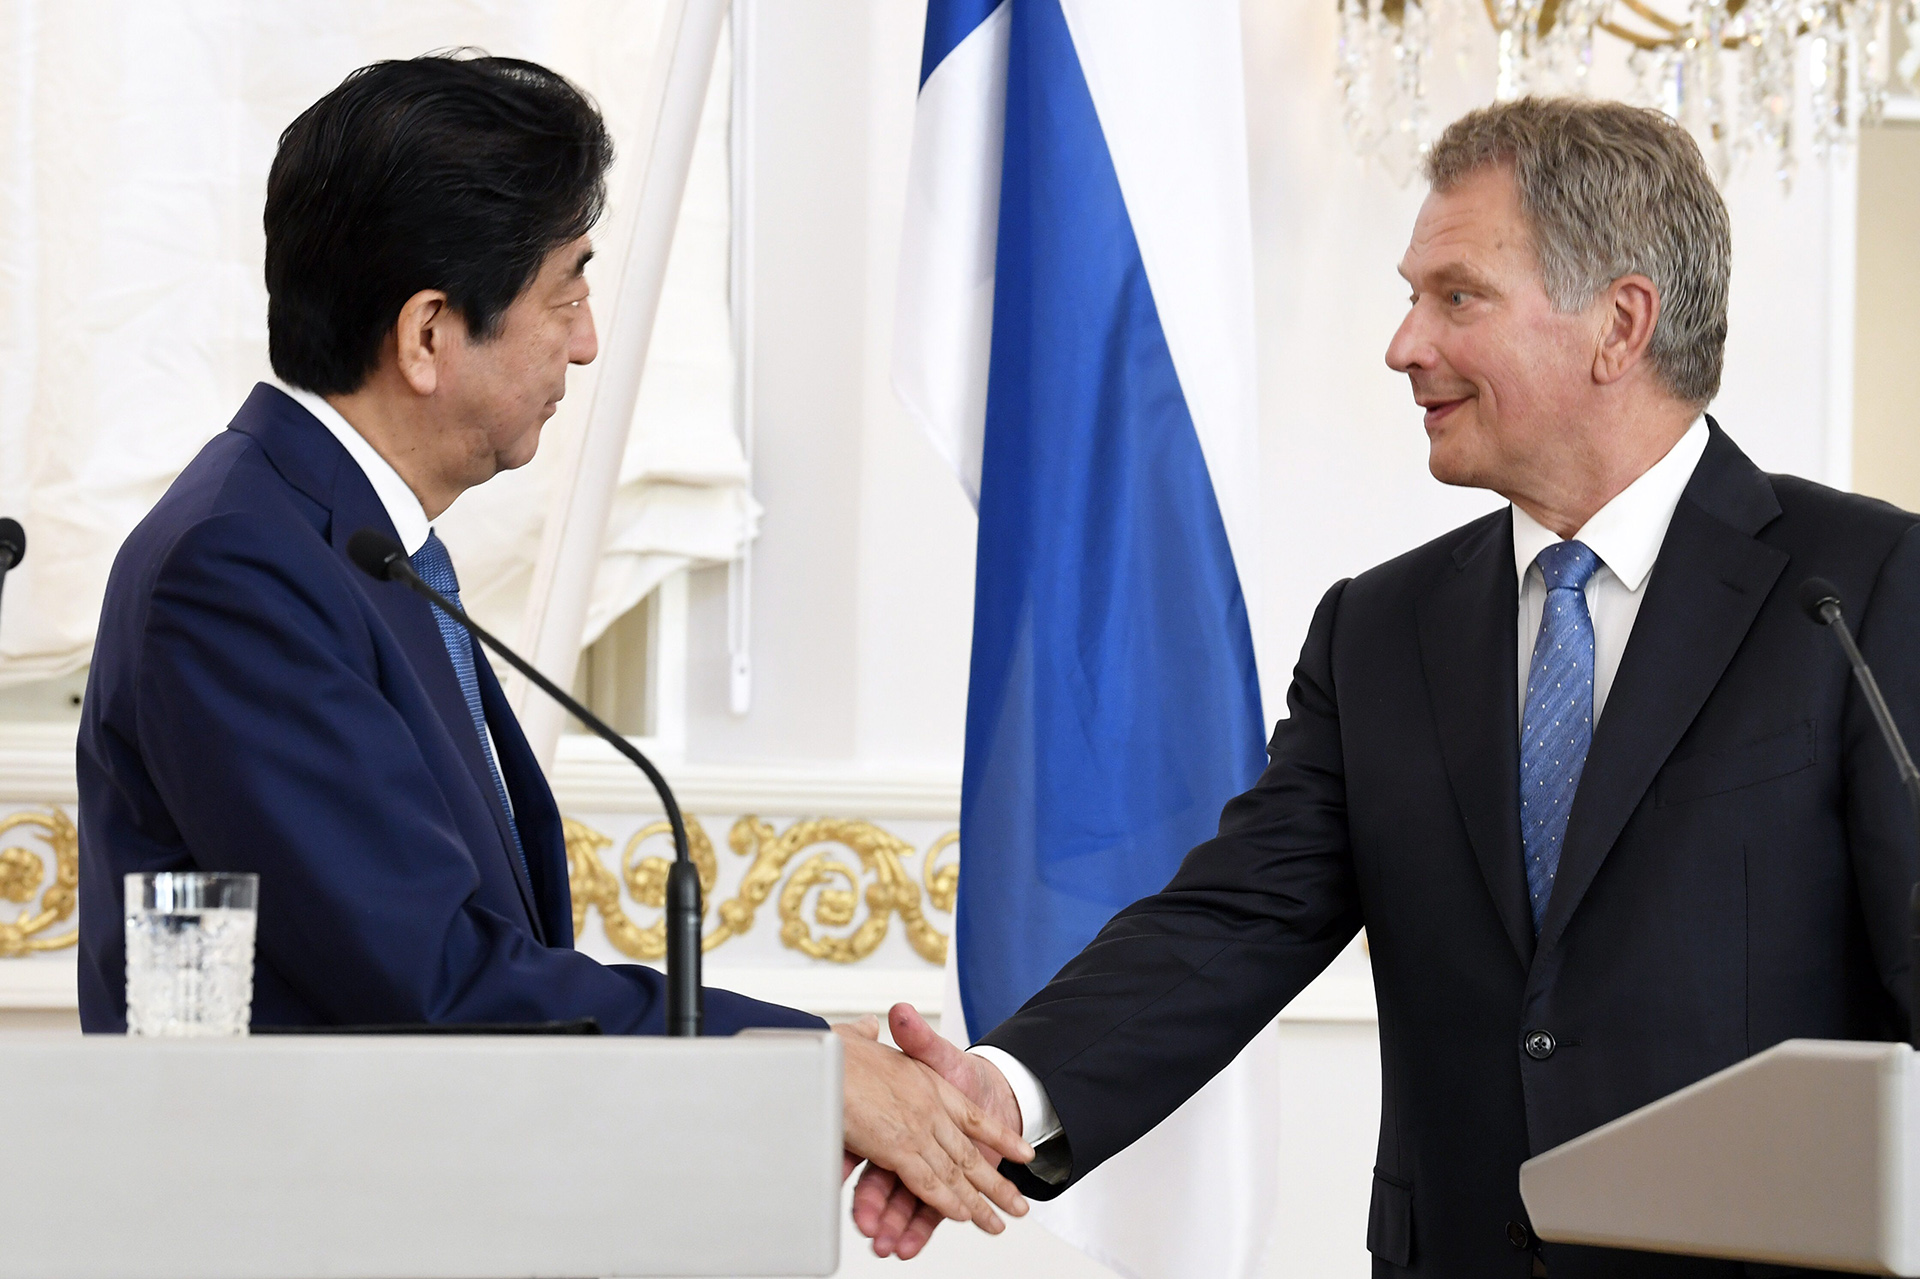 Finnlands Staats- und Regierungschefs sprechen ihr Beileid zum Tod des ehemaligen japanischen Premierministers Shinzo Abe aus